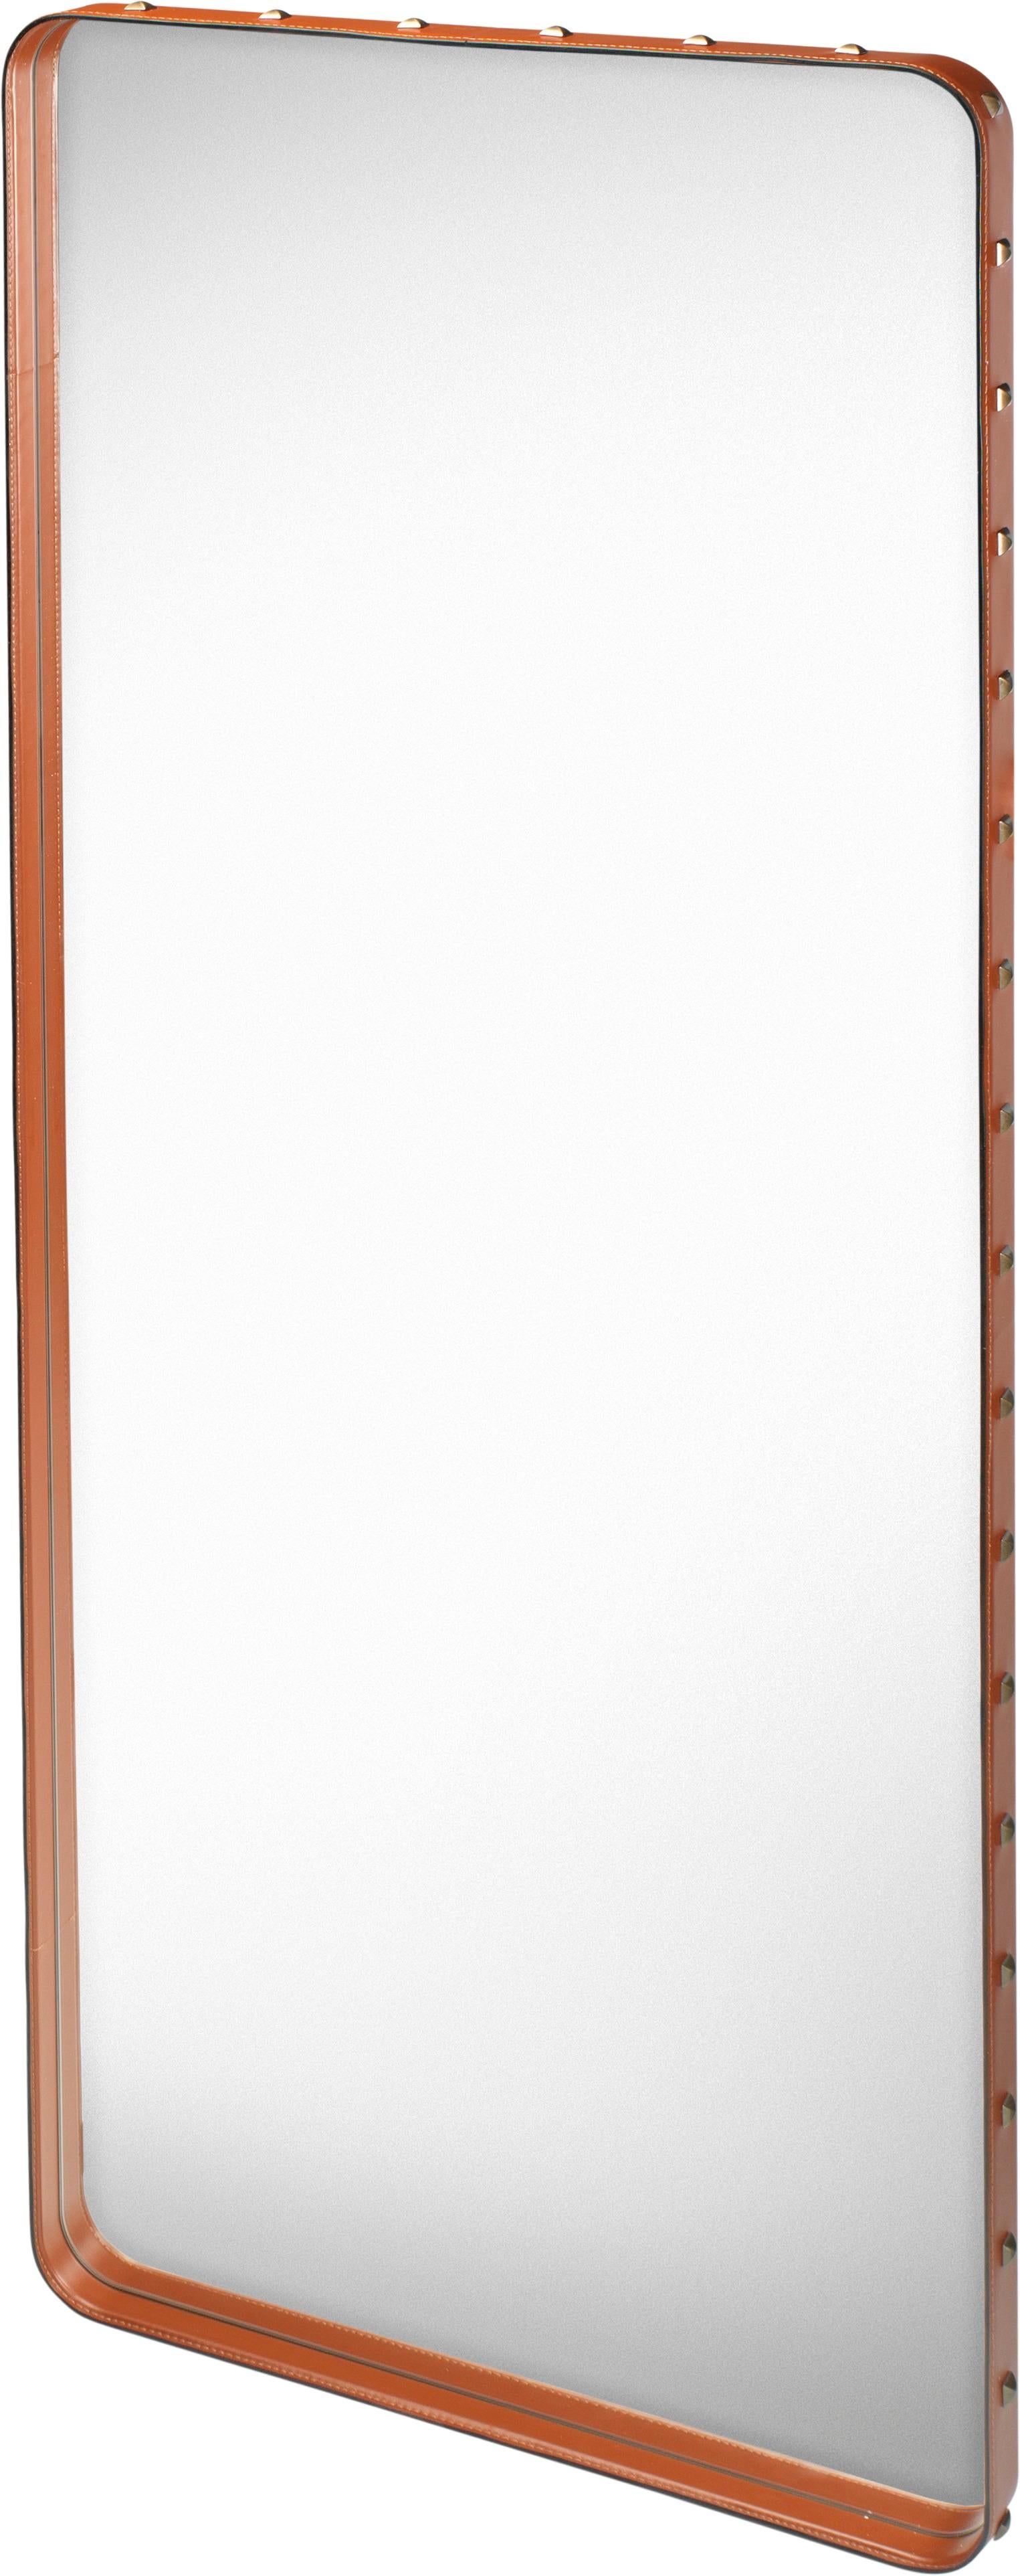 Großer Wandspiegel 'Rectangulaire' von Jacques Adnet aus hellbraunem Leder für GUBI. Der ursprünglich von Jacques Adnet in den 1950er Jahren entworfene, unglaublich raffinierte Spiegel ist aus hochwertigem hellbraunem Anilinleder gefertigt und an